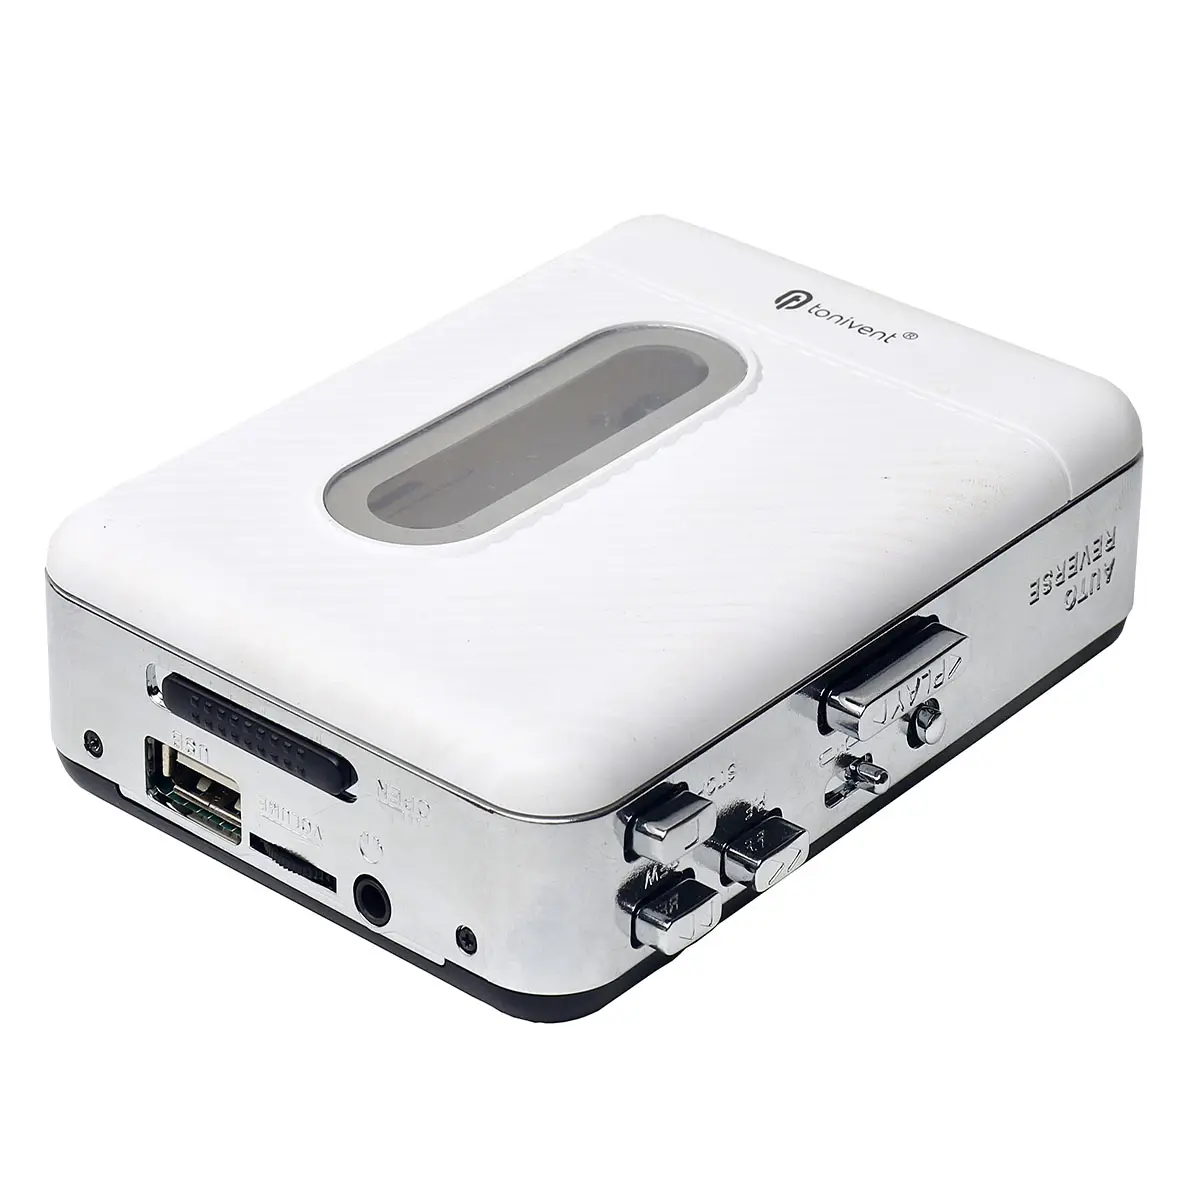 Vendita calda TON772 portatile USB Cassette Recorder Player tape to MP3 formato tramite USB drive Csssette tape TO MP3 Converter